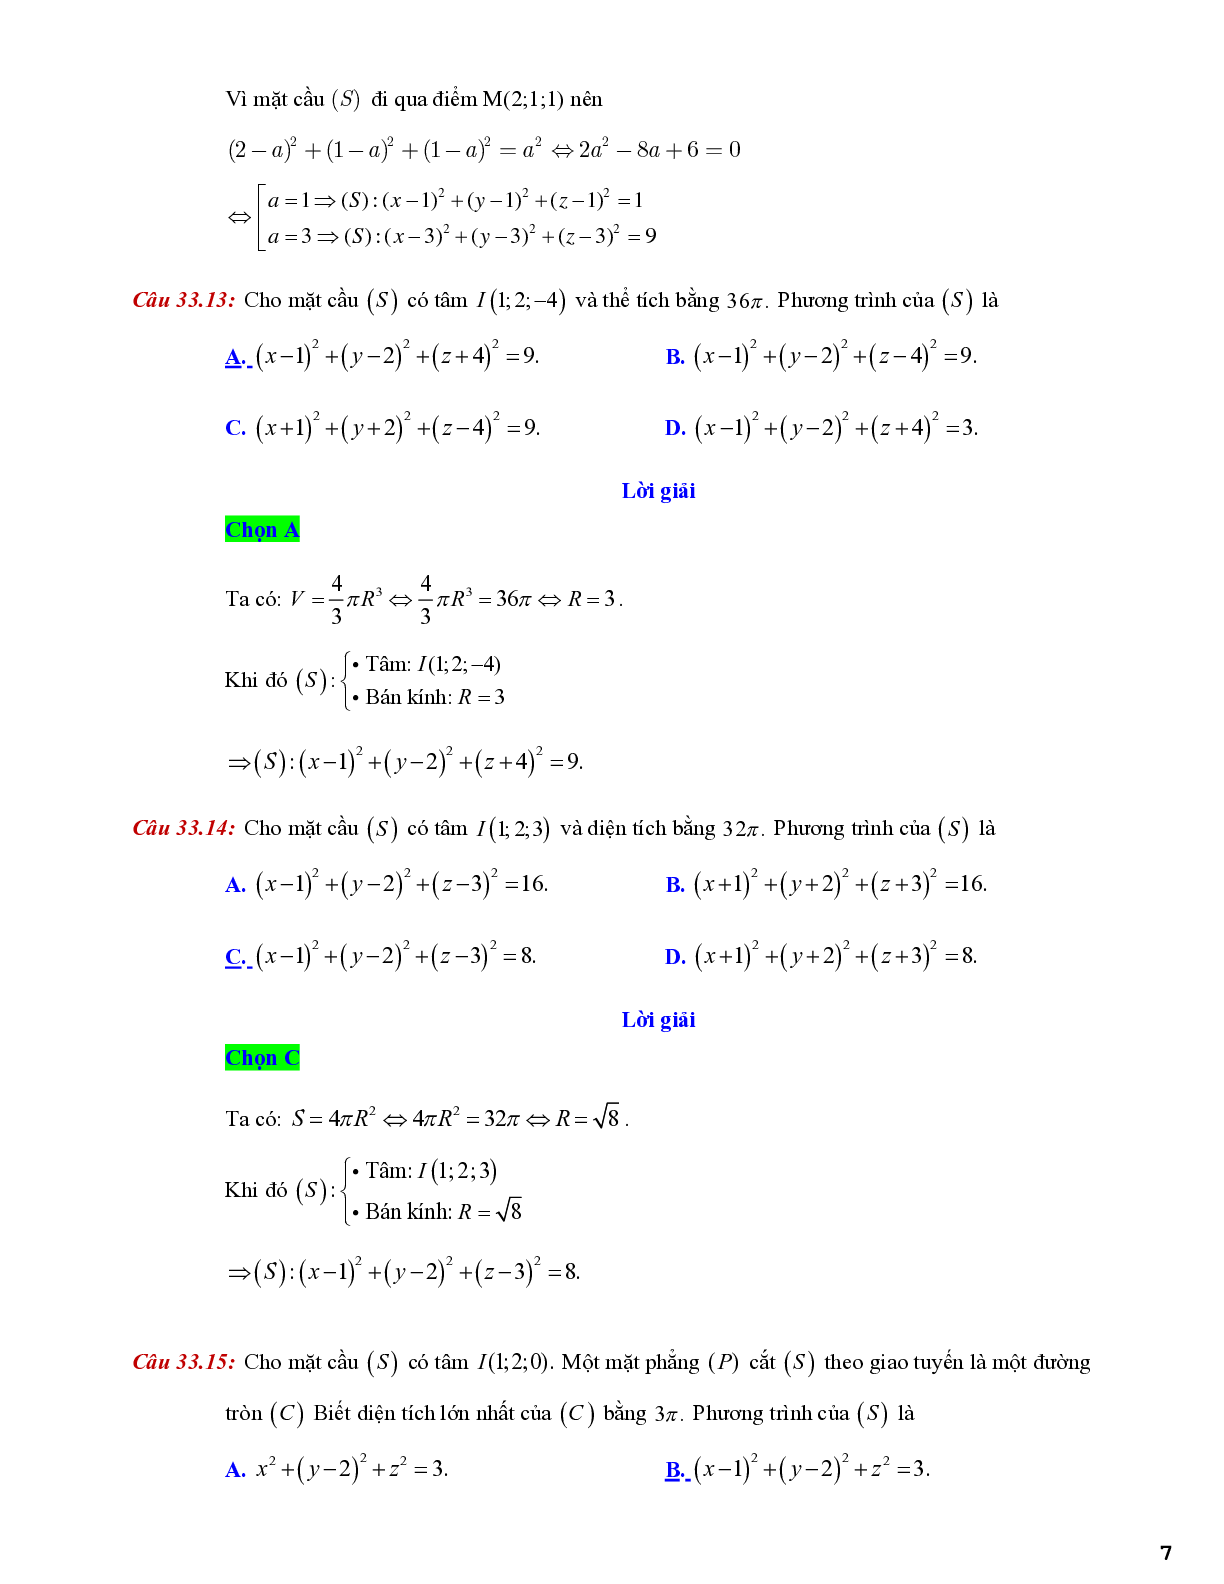 Lý thuyết và bài tập về viết phương trình mặt cầu - có đáp án chi tiết (trang 7)